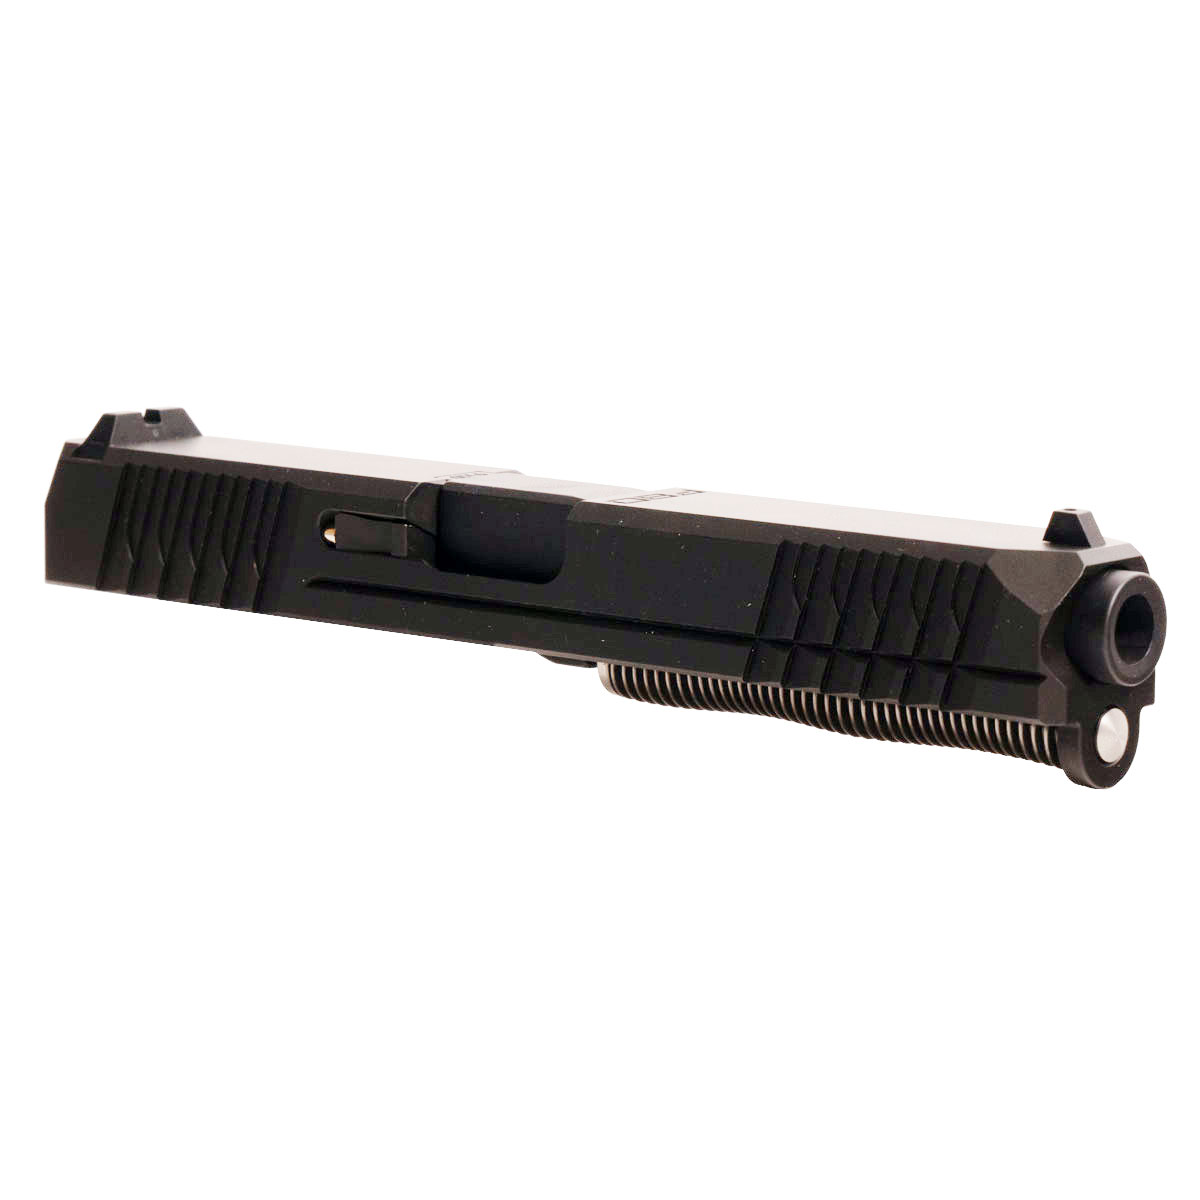 DD 'Eidolon Ally' 9mm Complete Slide Kit - Glock 17 Gen 1-3 Compatible